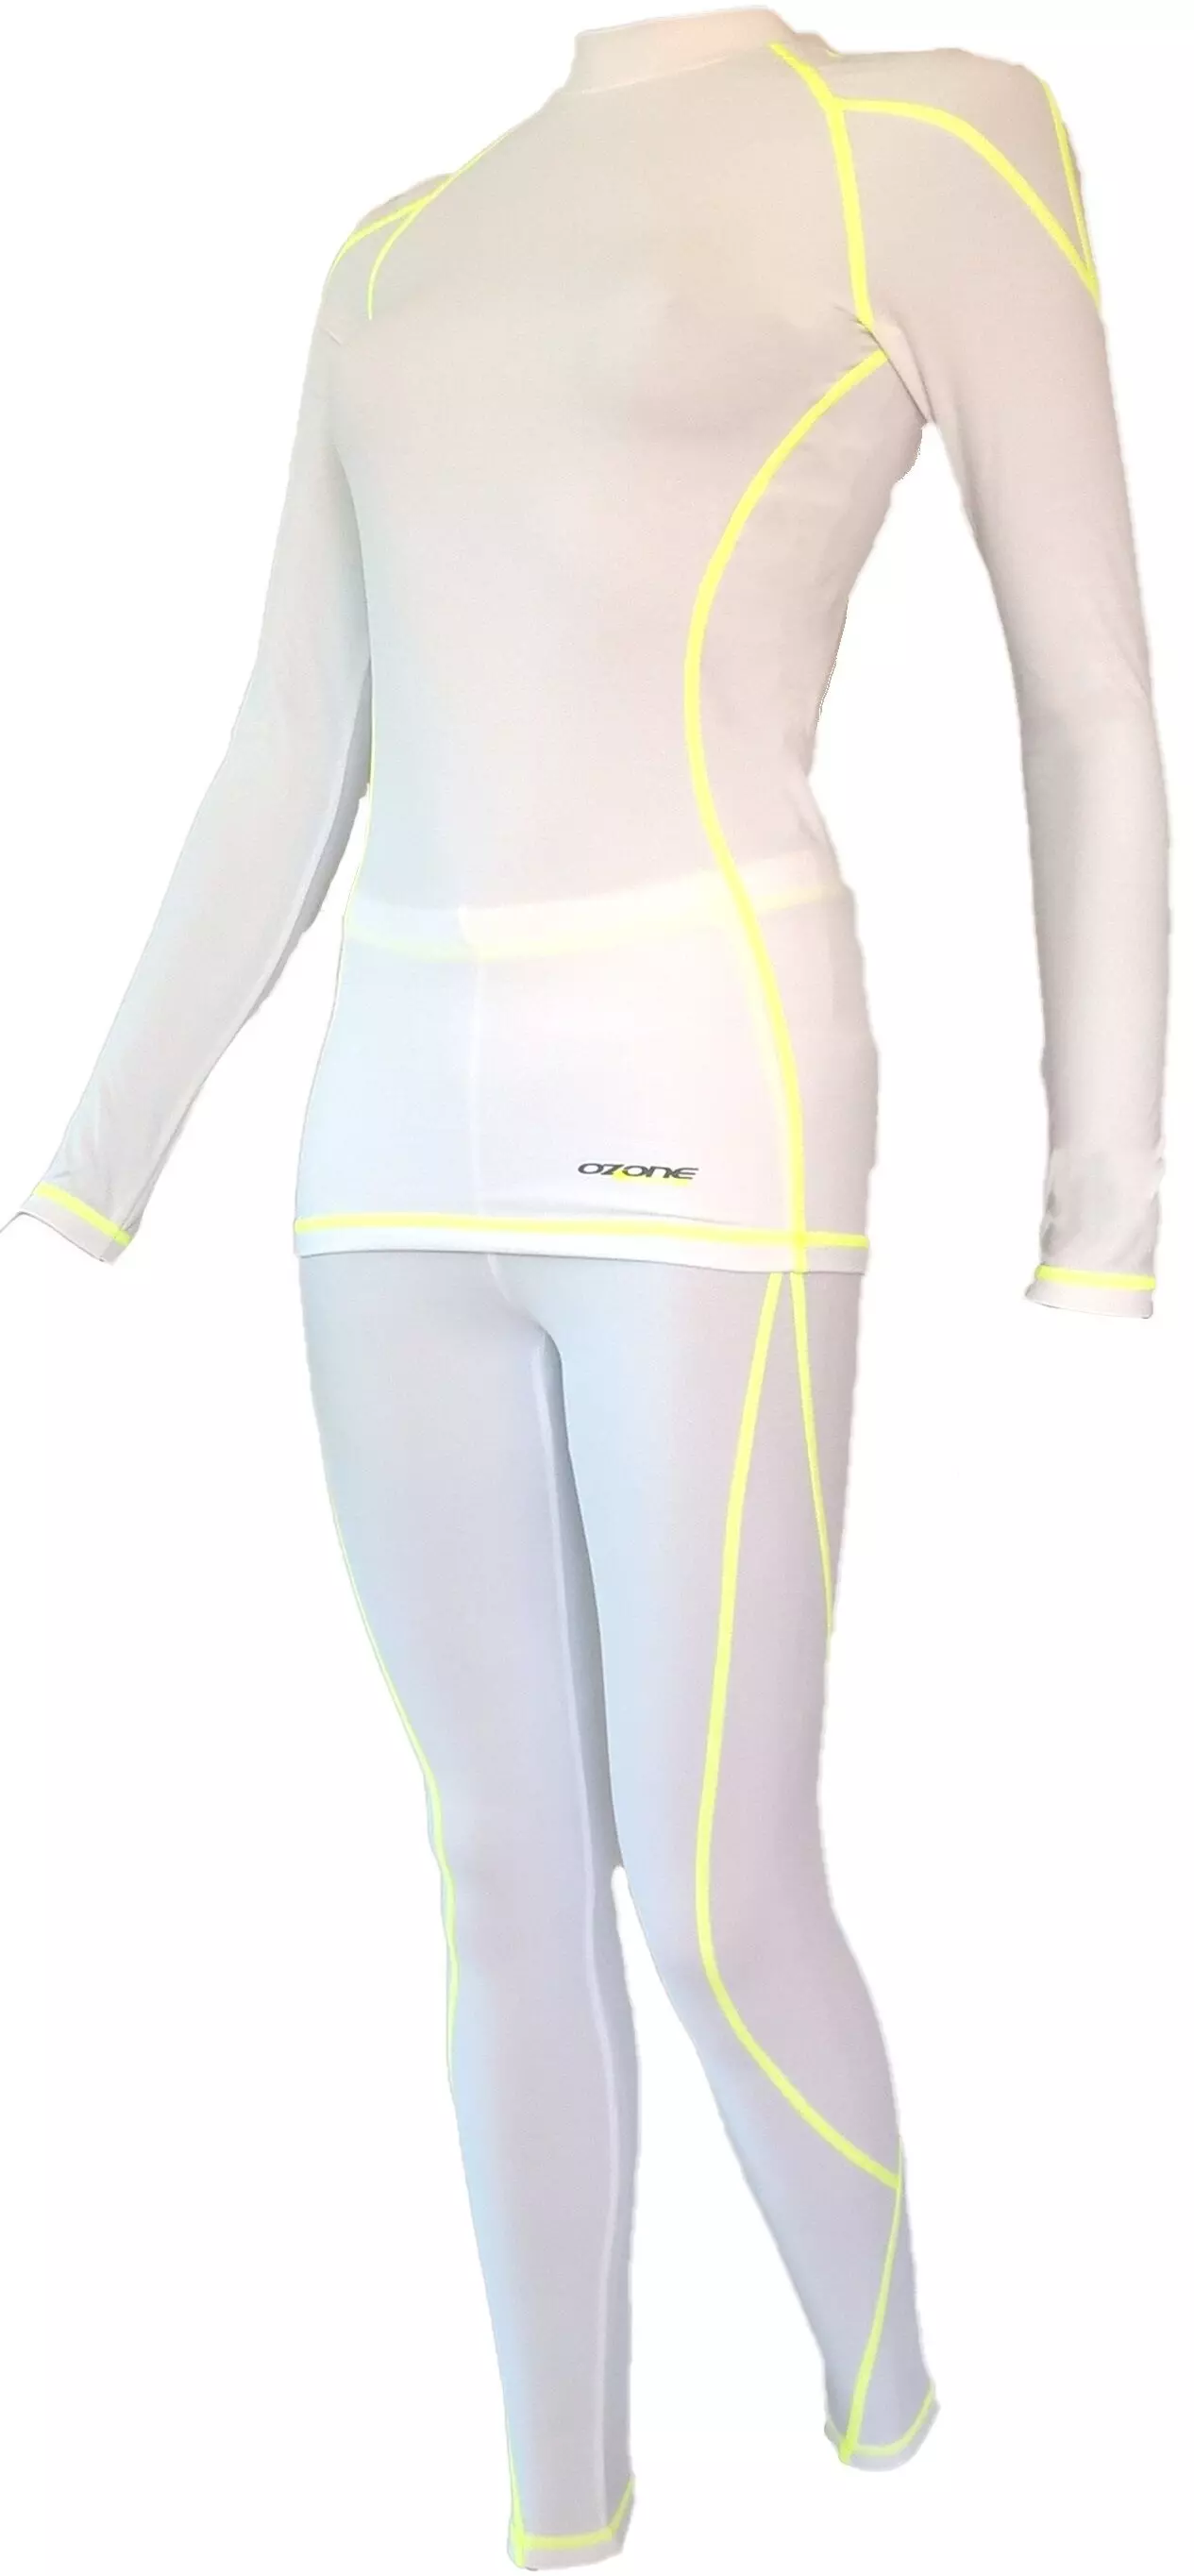 Ozone női aláöltöző szett fehér-lime